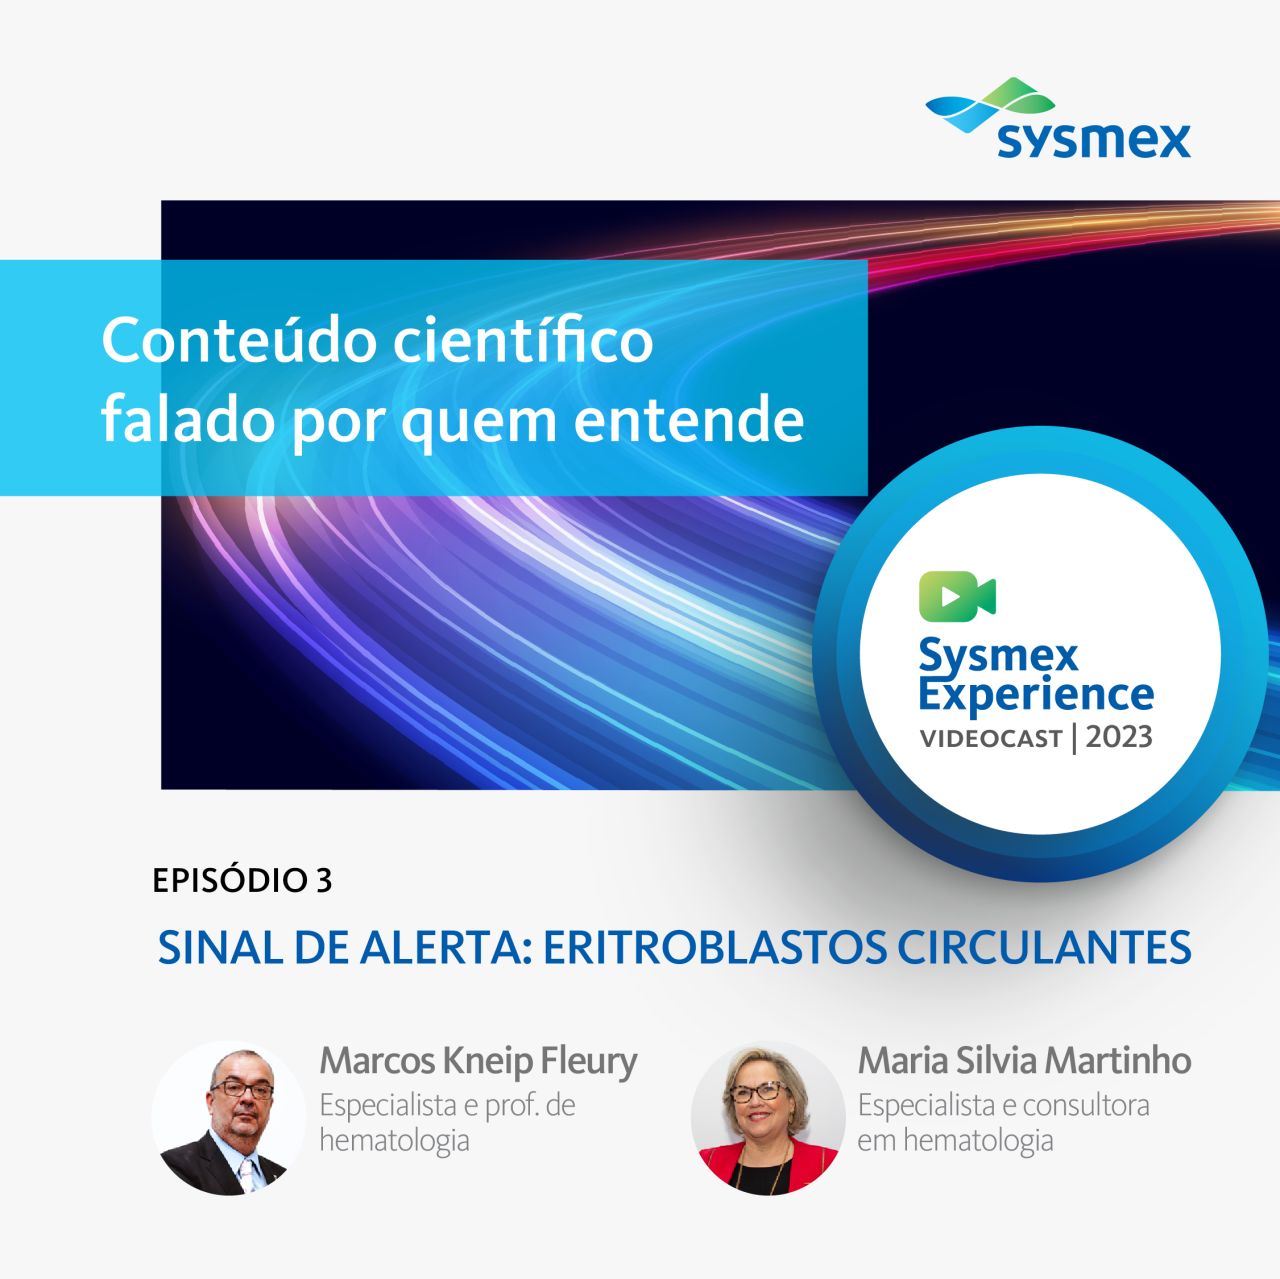 Novo episódio do videocast gratuito da Sysmex aborda o sinal de alerta para eritroblastos circulantes